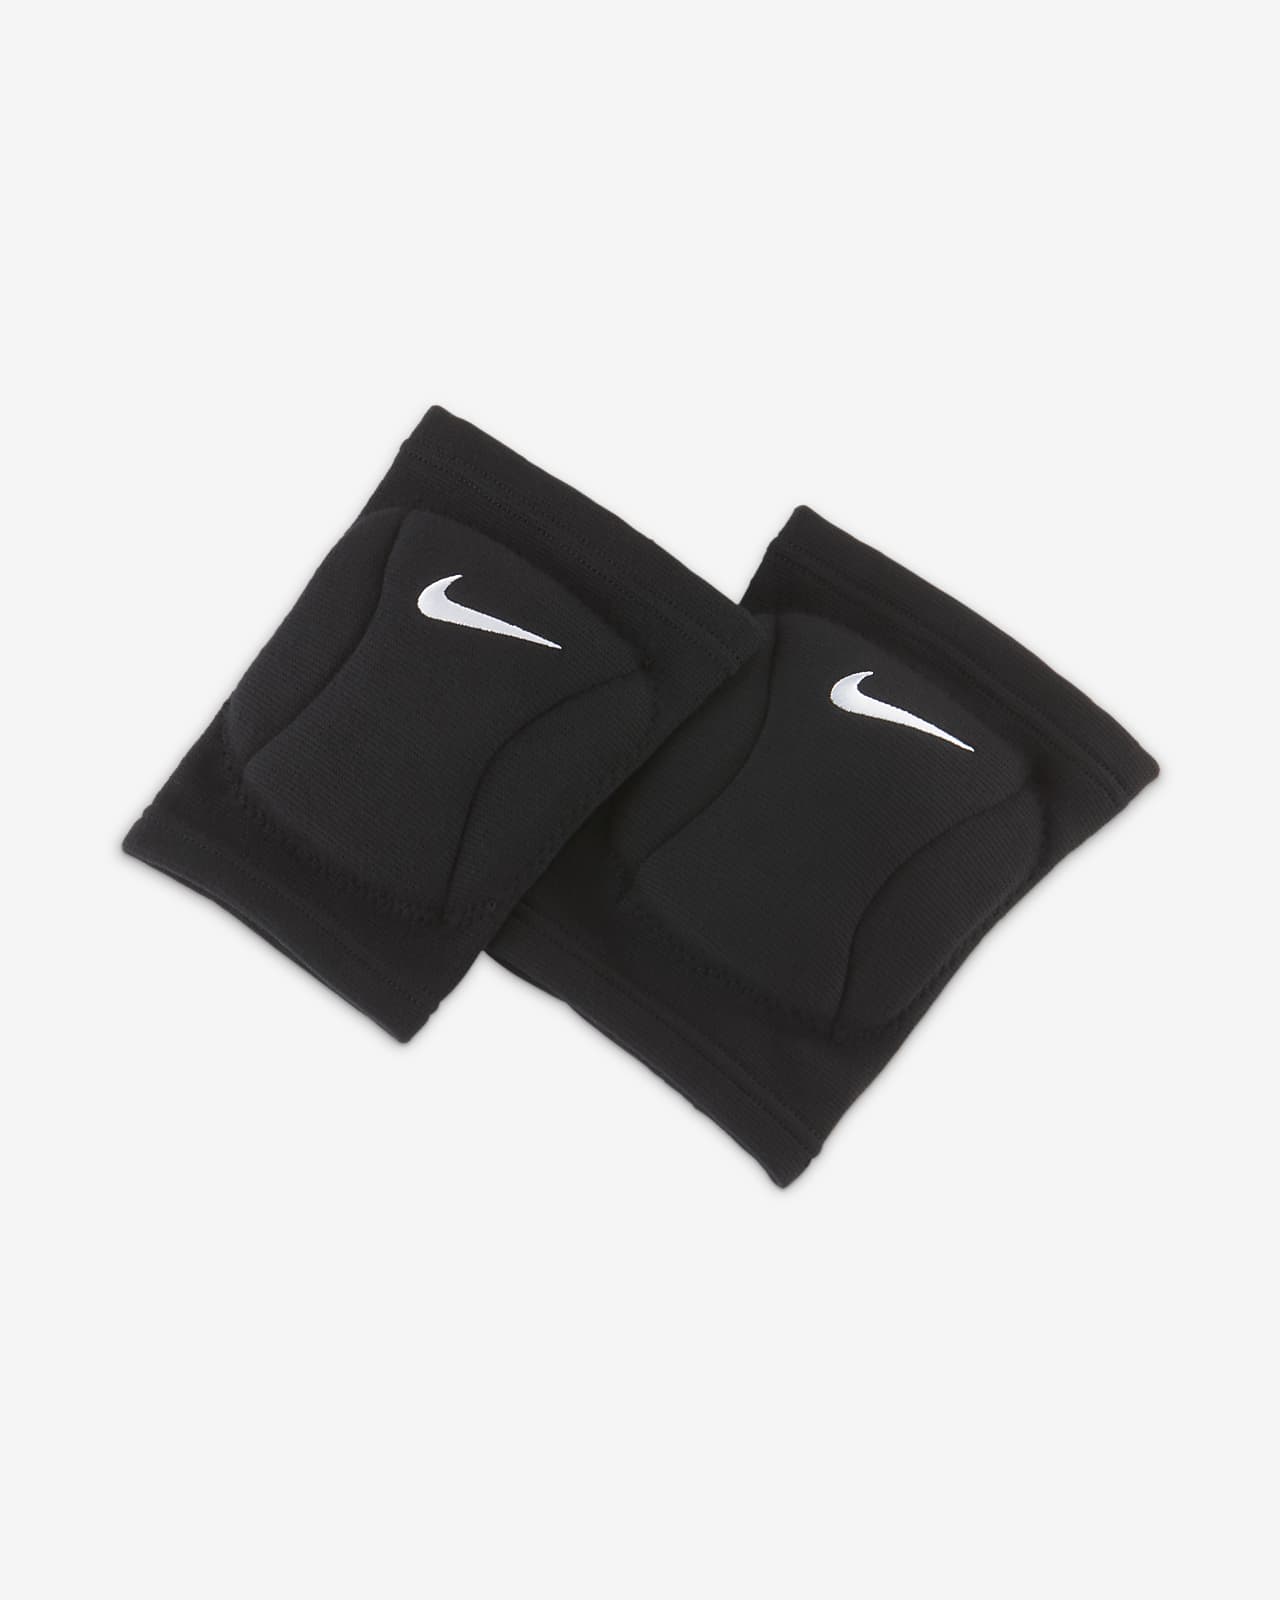 Siatkarskie ochraniacze na kolana Nike Streak